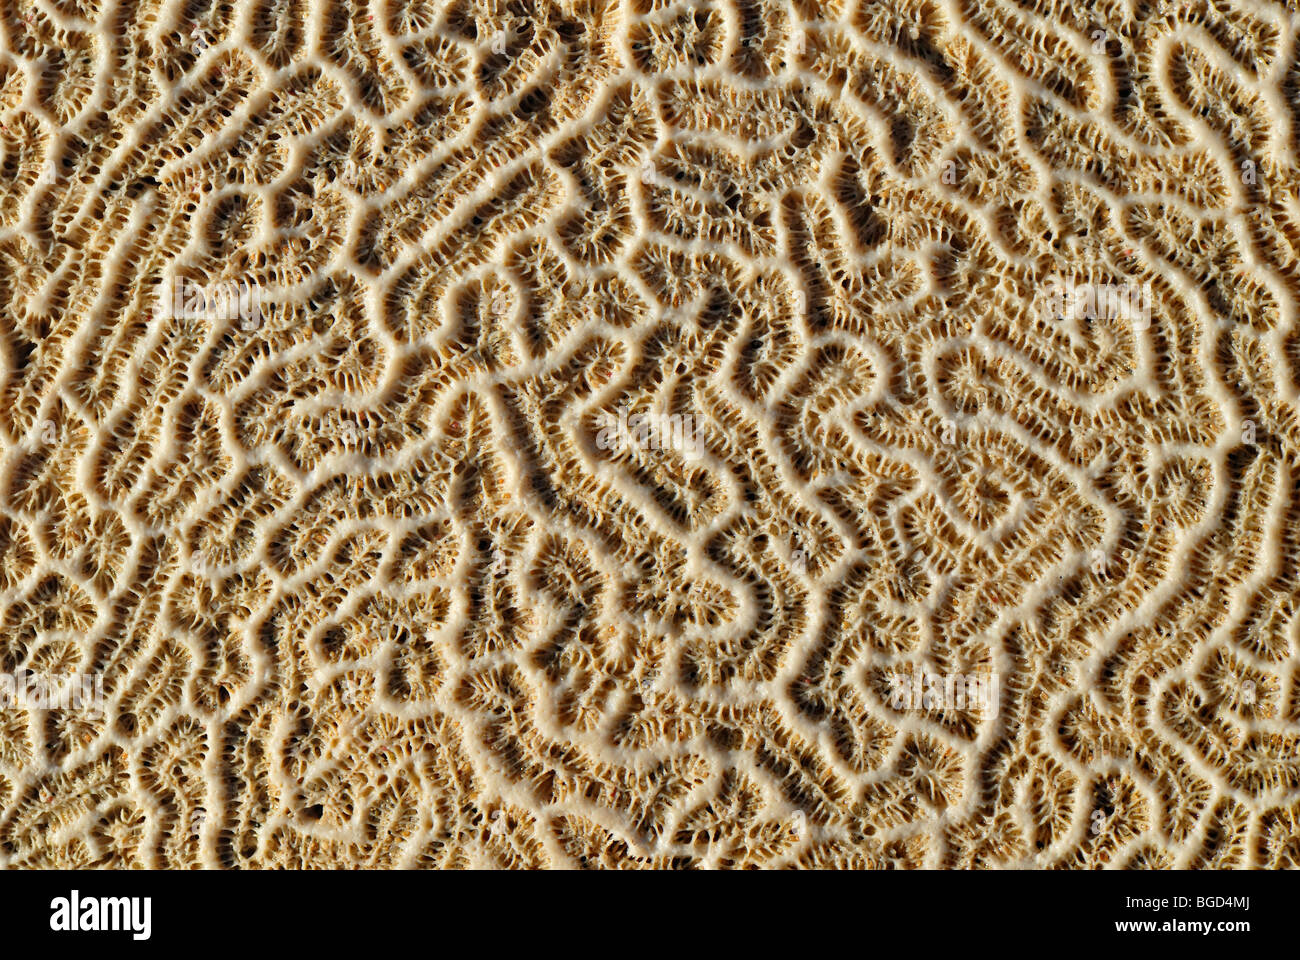 Structure d'un cerveau Diploria strigosa (corail), échoués sur la plage, l'île Sainte-Croix, îles Vierges américaines, United States Banque D'Images